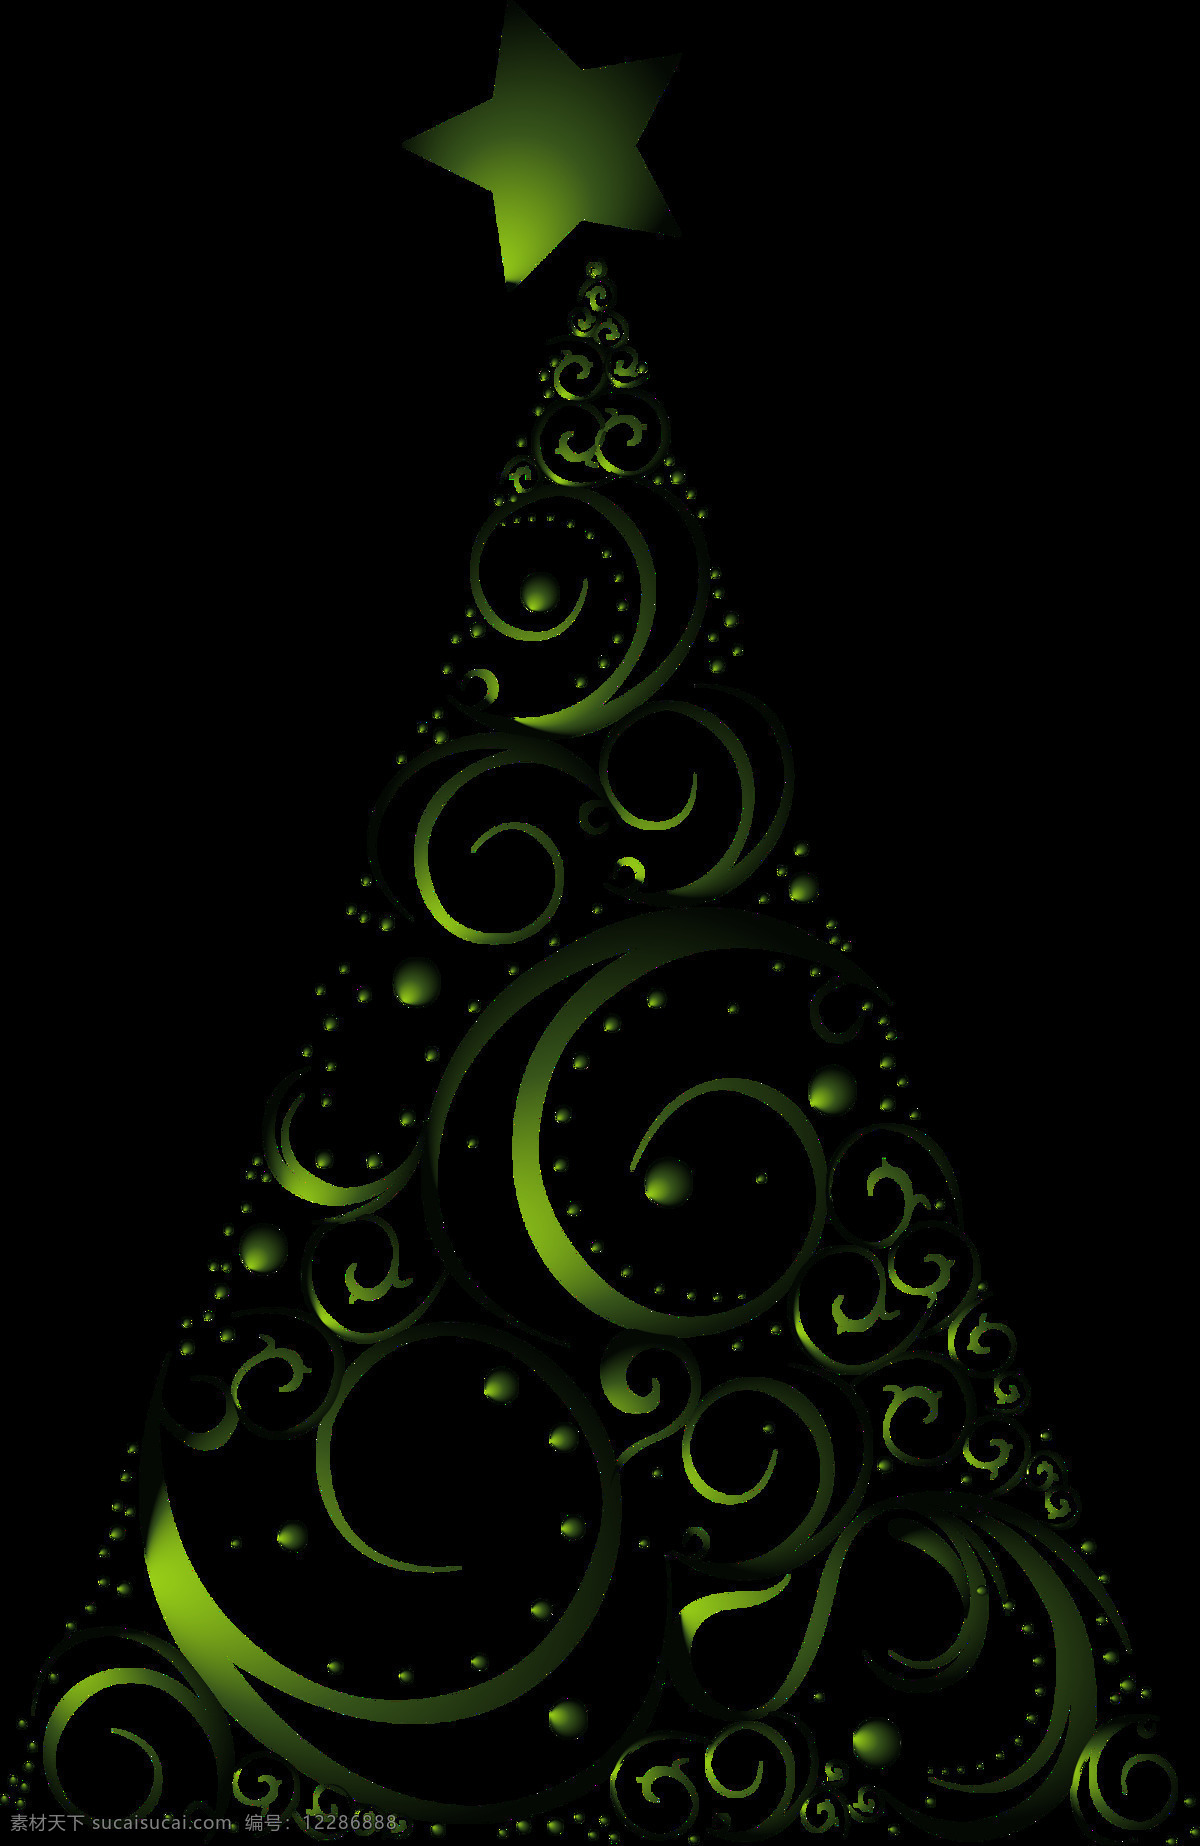 绿色 抽象 花纹 圣诞树 元素 花纹圣诞树 圣诞透明元素 圣诞节 圣诞节快乐 圣诞老人 圣诞装饰 圣诞松枝 圣诞装扮 圣诞免抠元素 抽象圣诞树